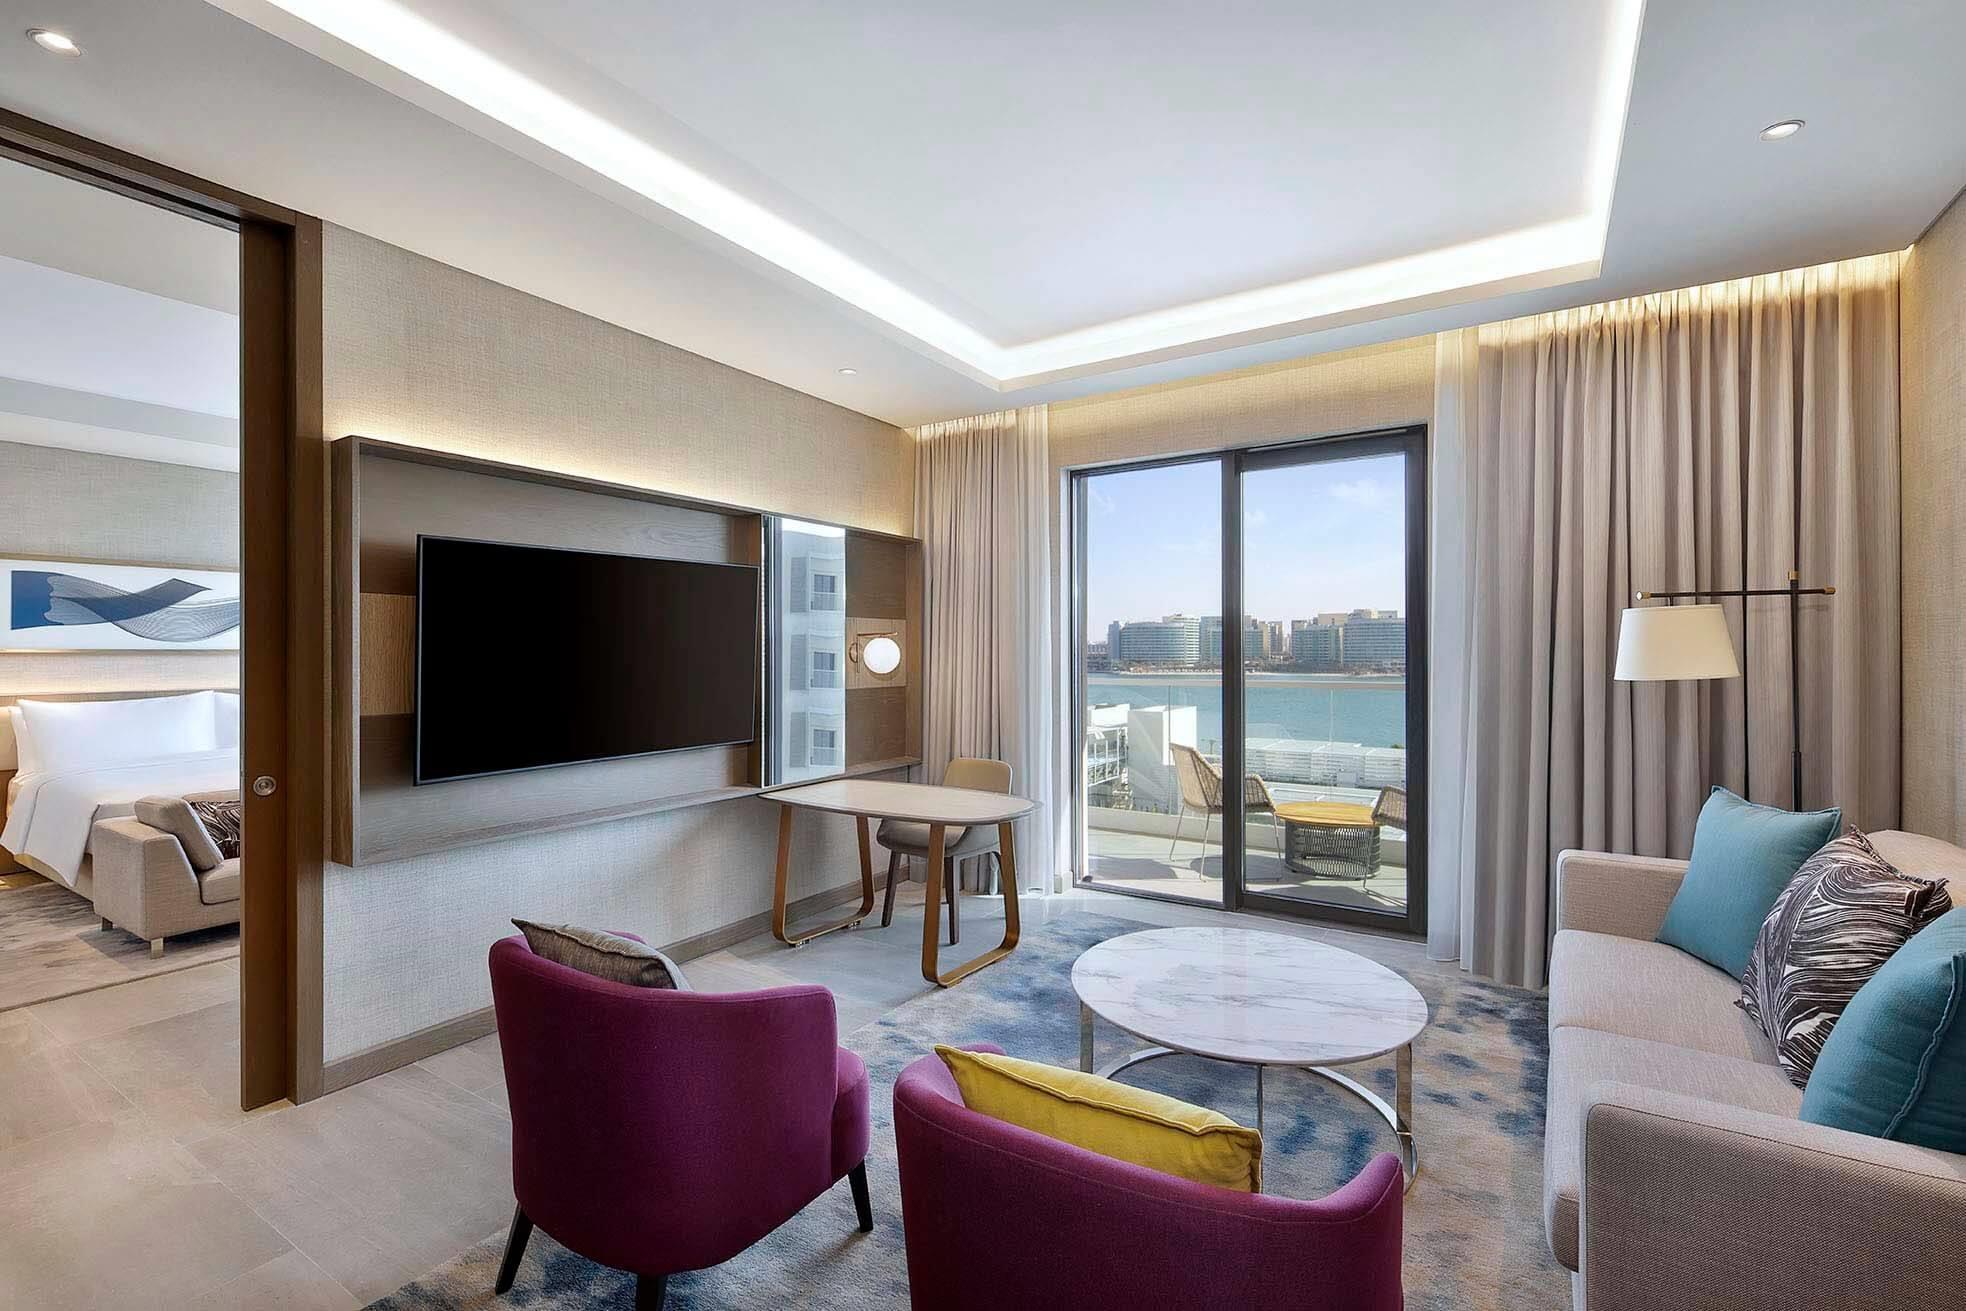 Hilton Abu Dhabi Yas Island 5*